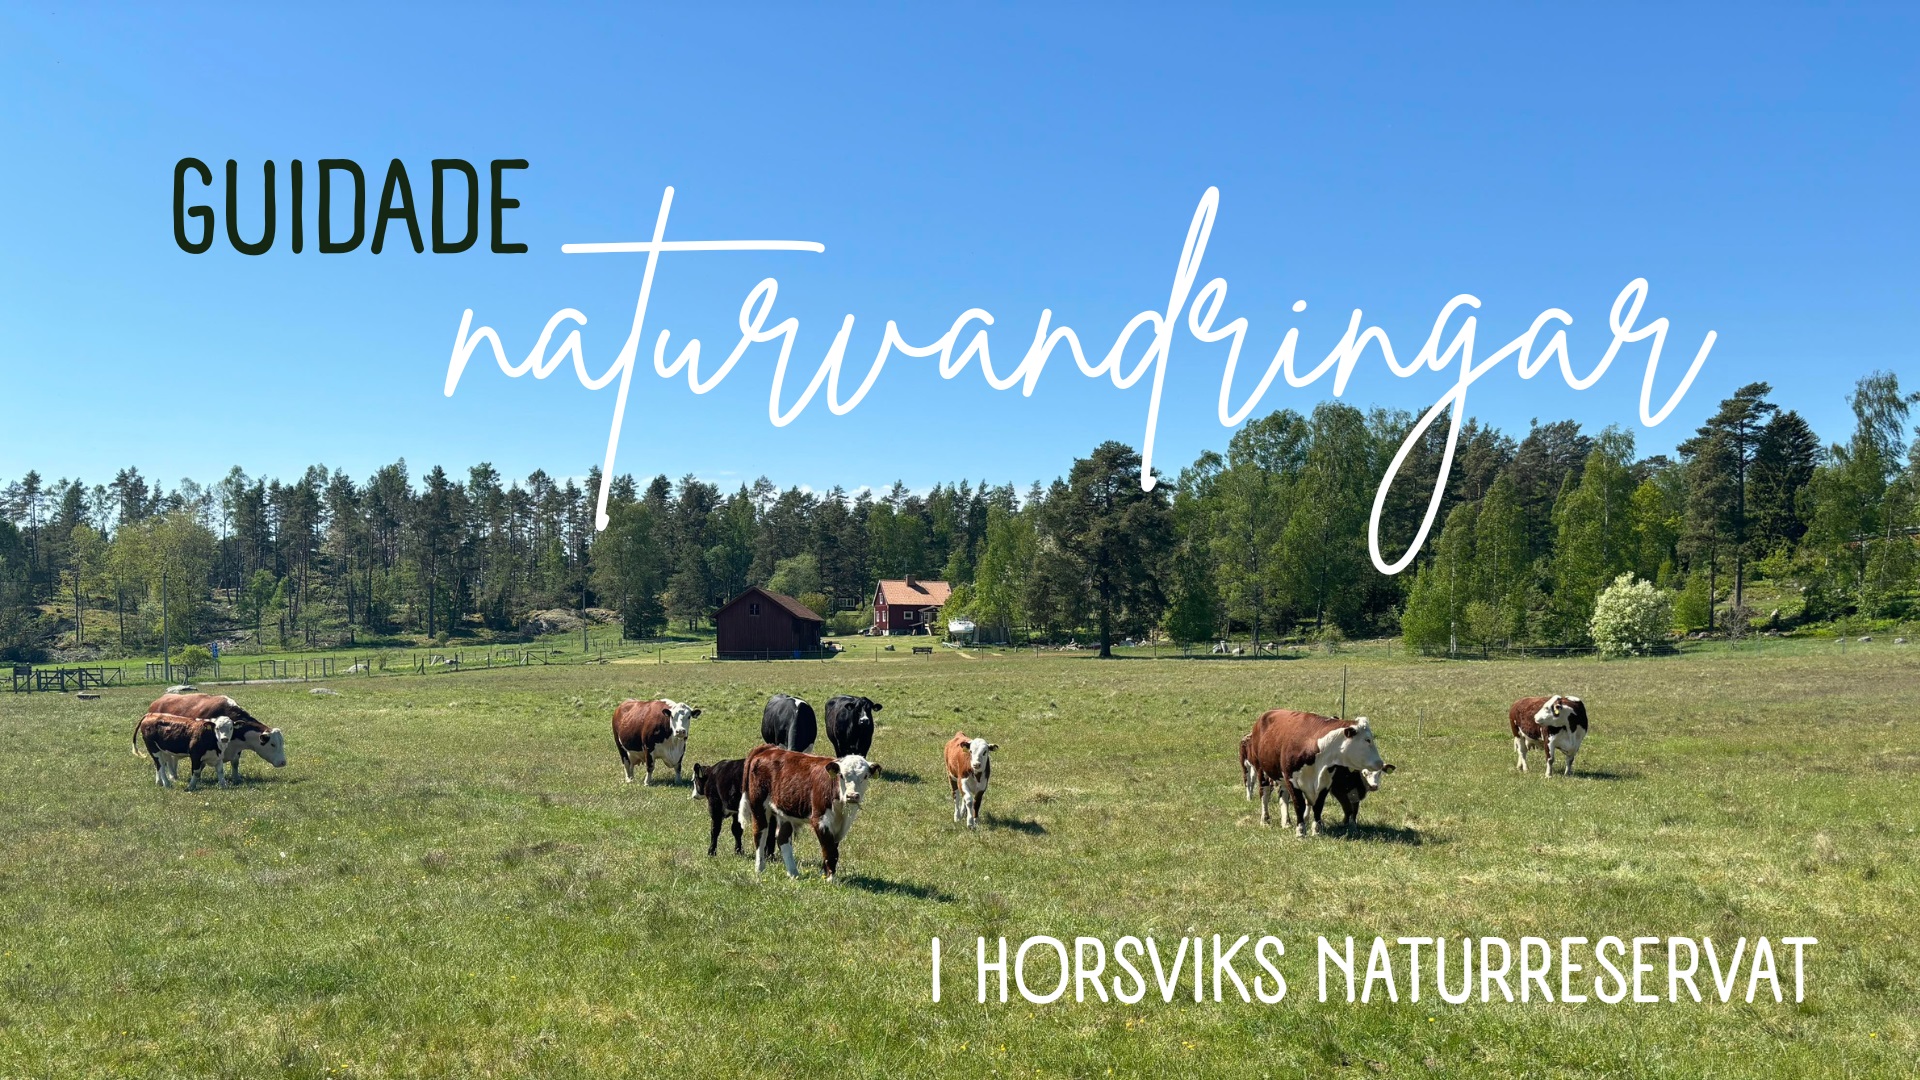 Guidade naturvandringar på Horsvik